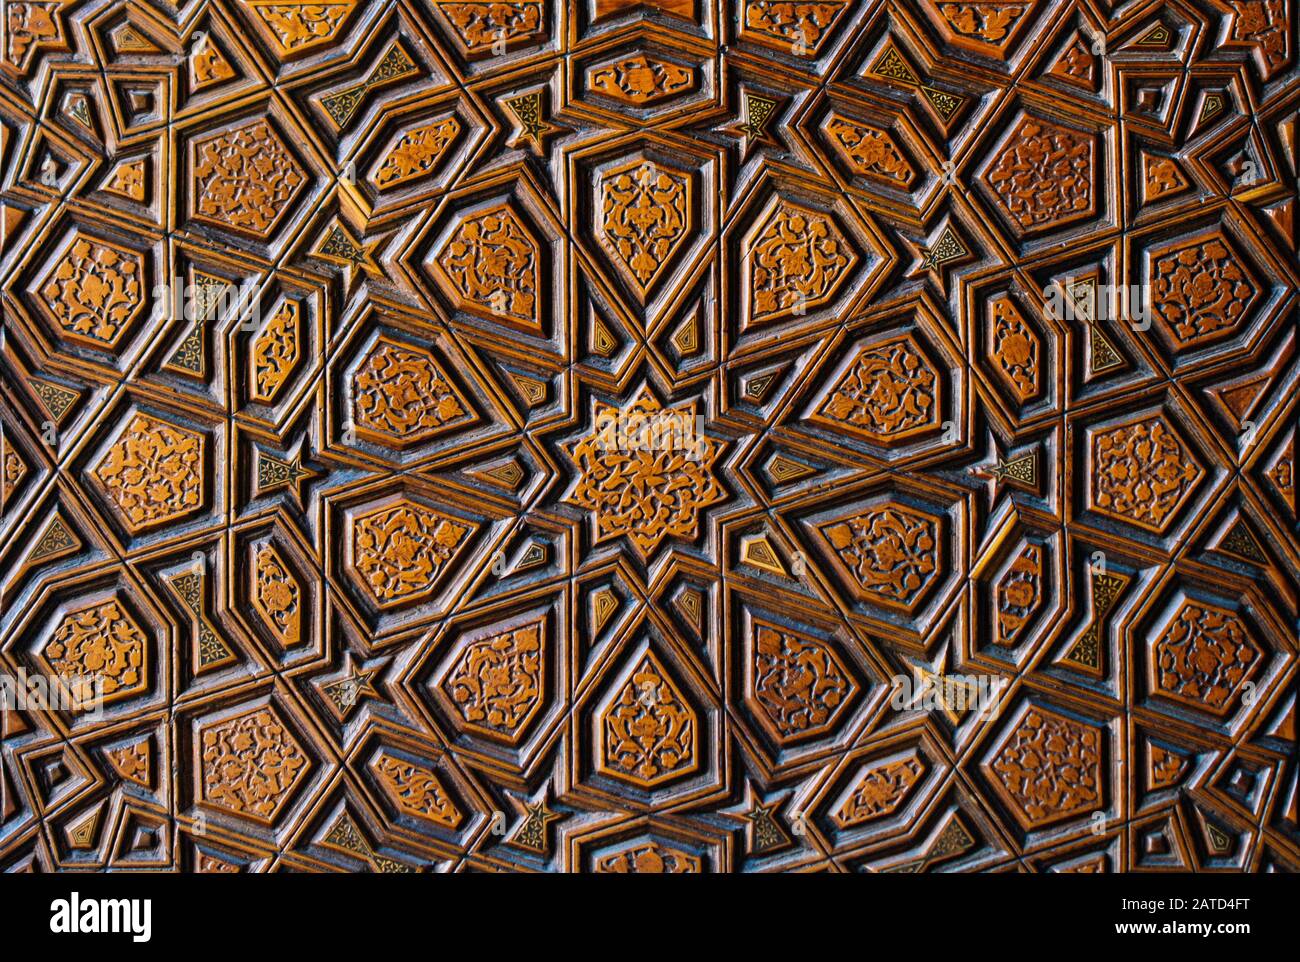 L'art ottoman turc à motifs géométriques sur bois Banque D'Images